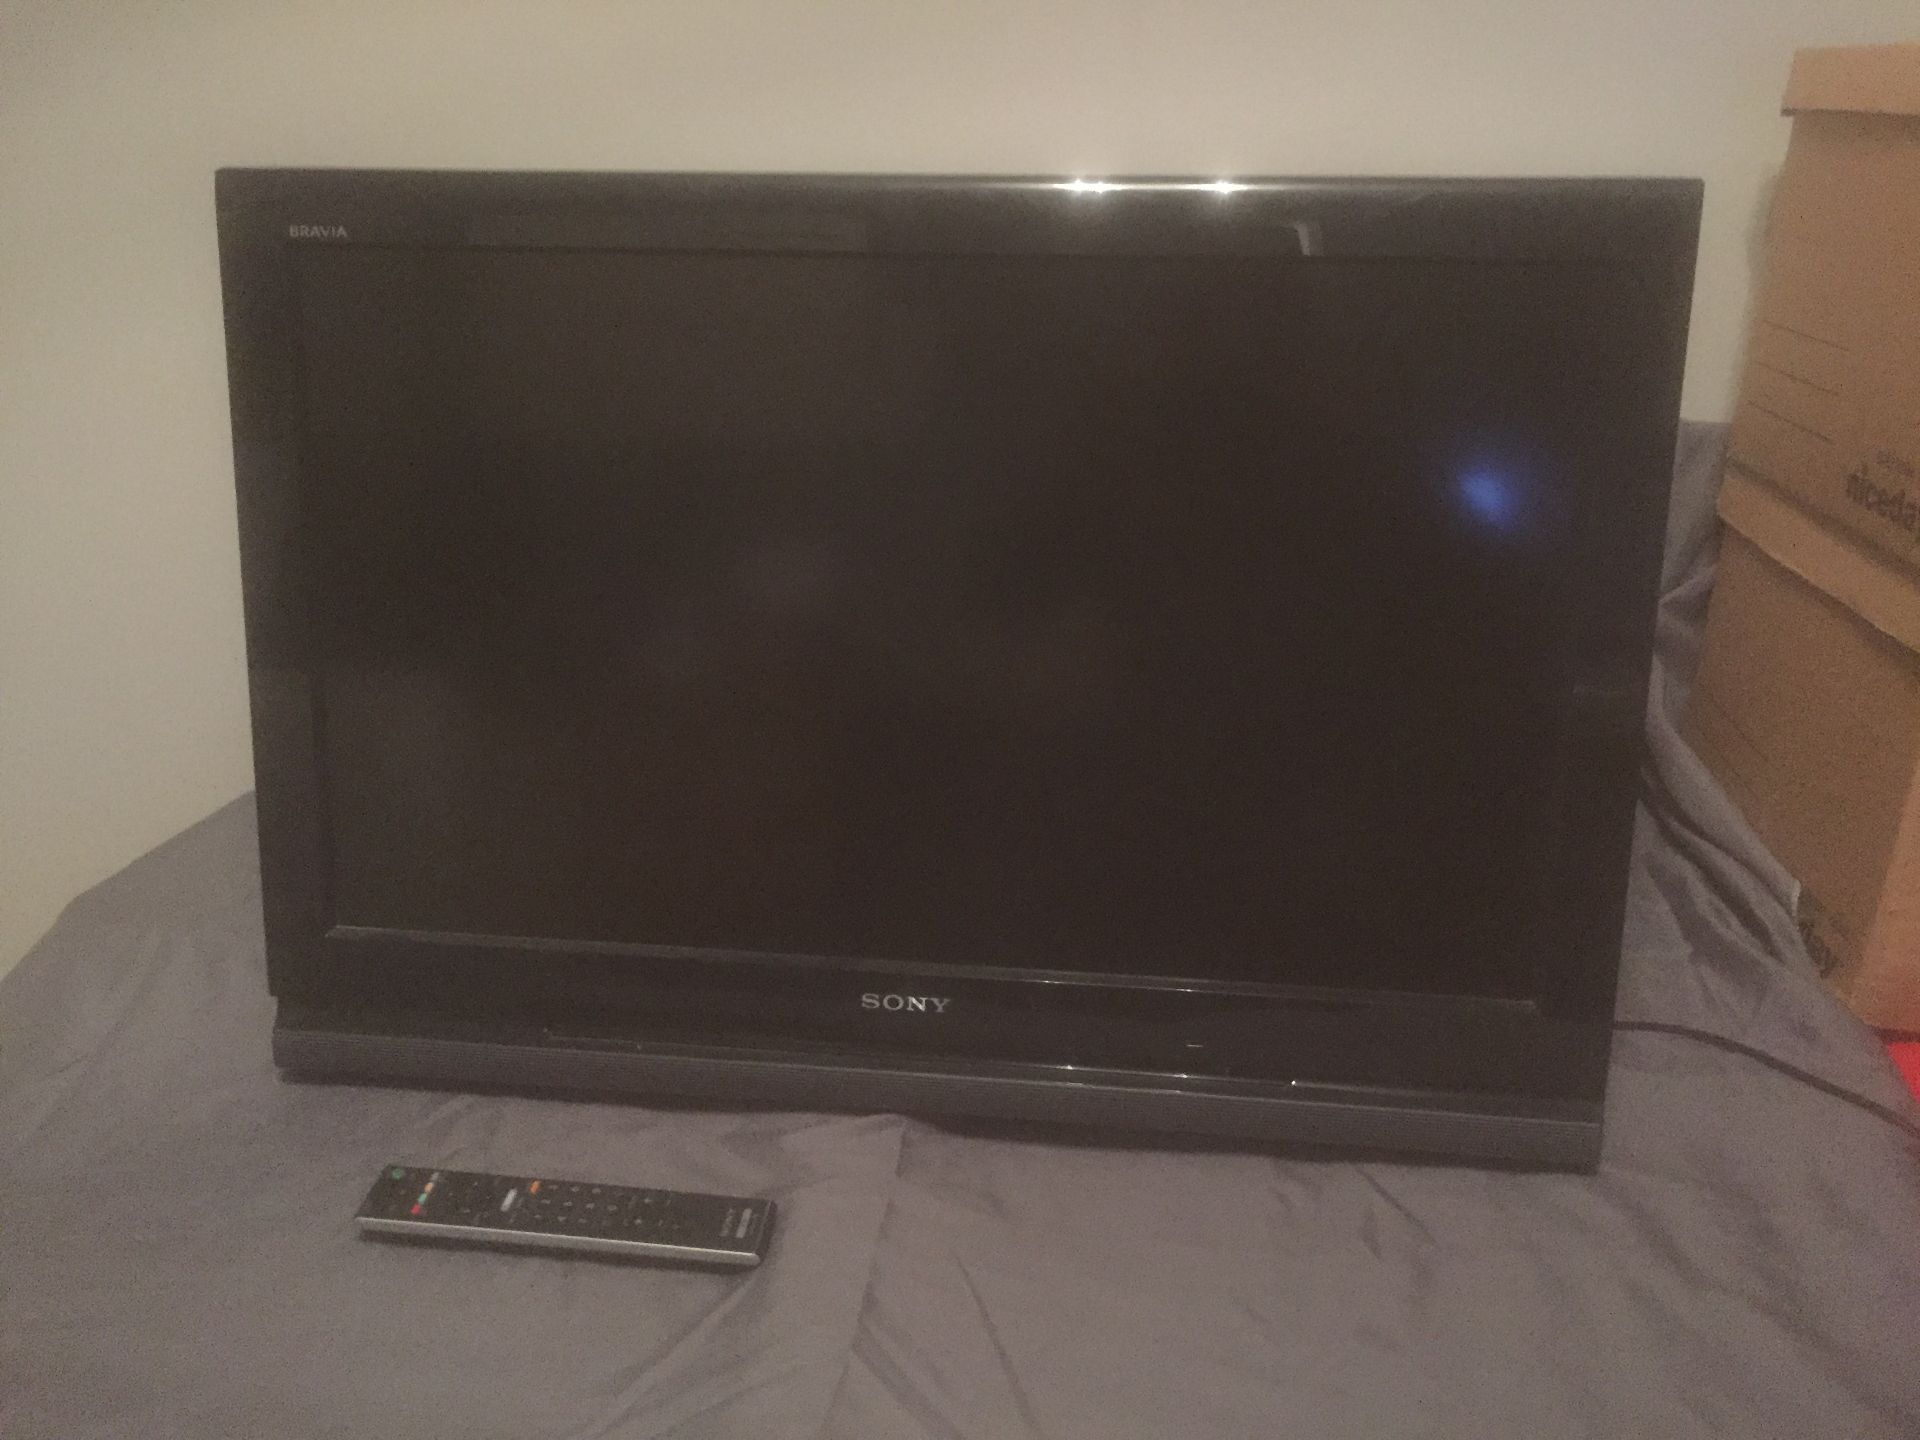 SONY 32V4000 32" LCD TV + REMOTE - No Reserve